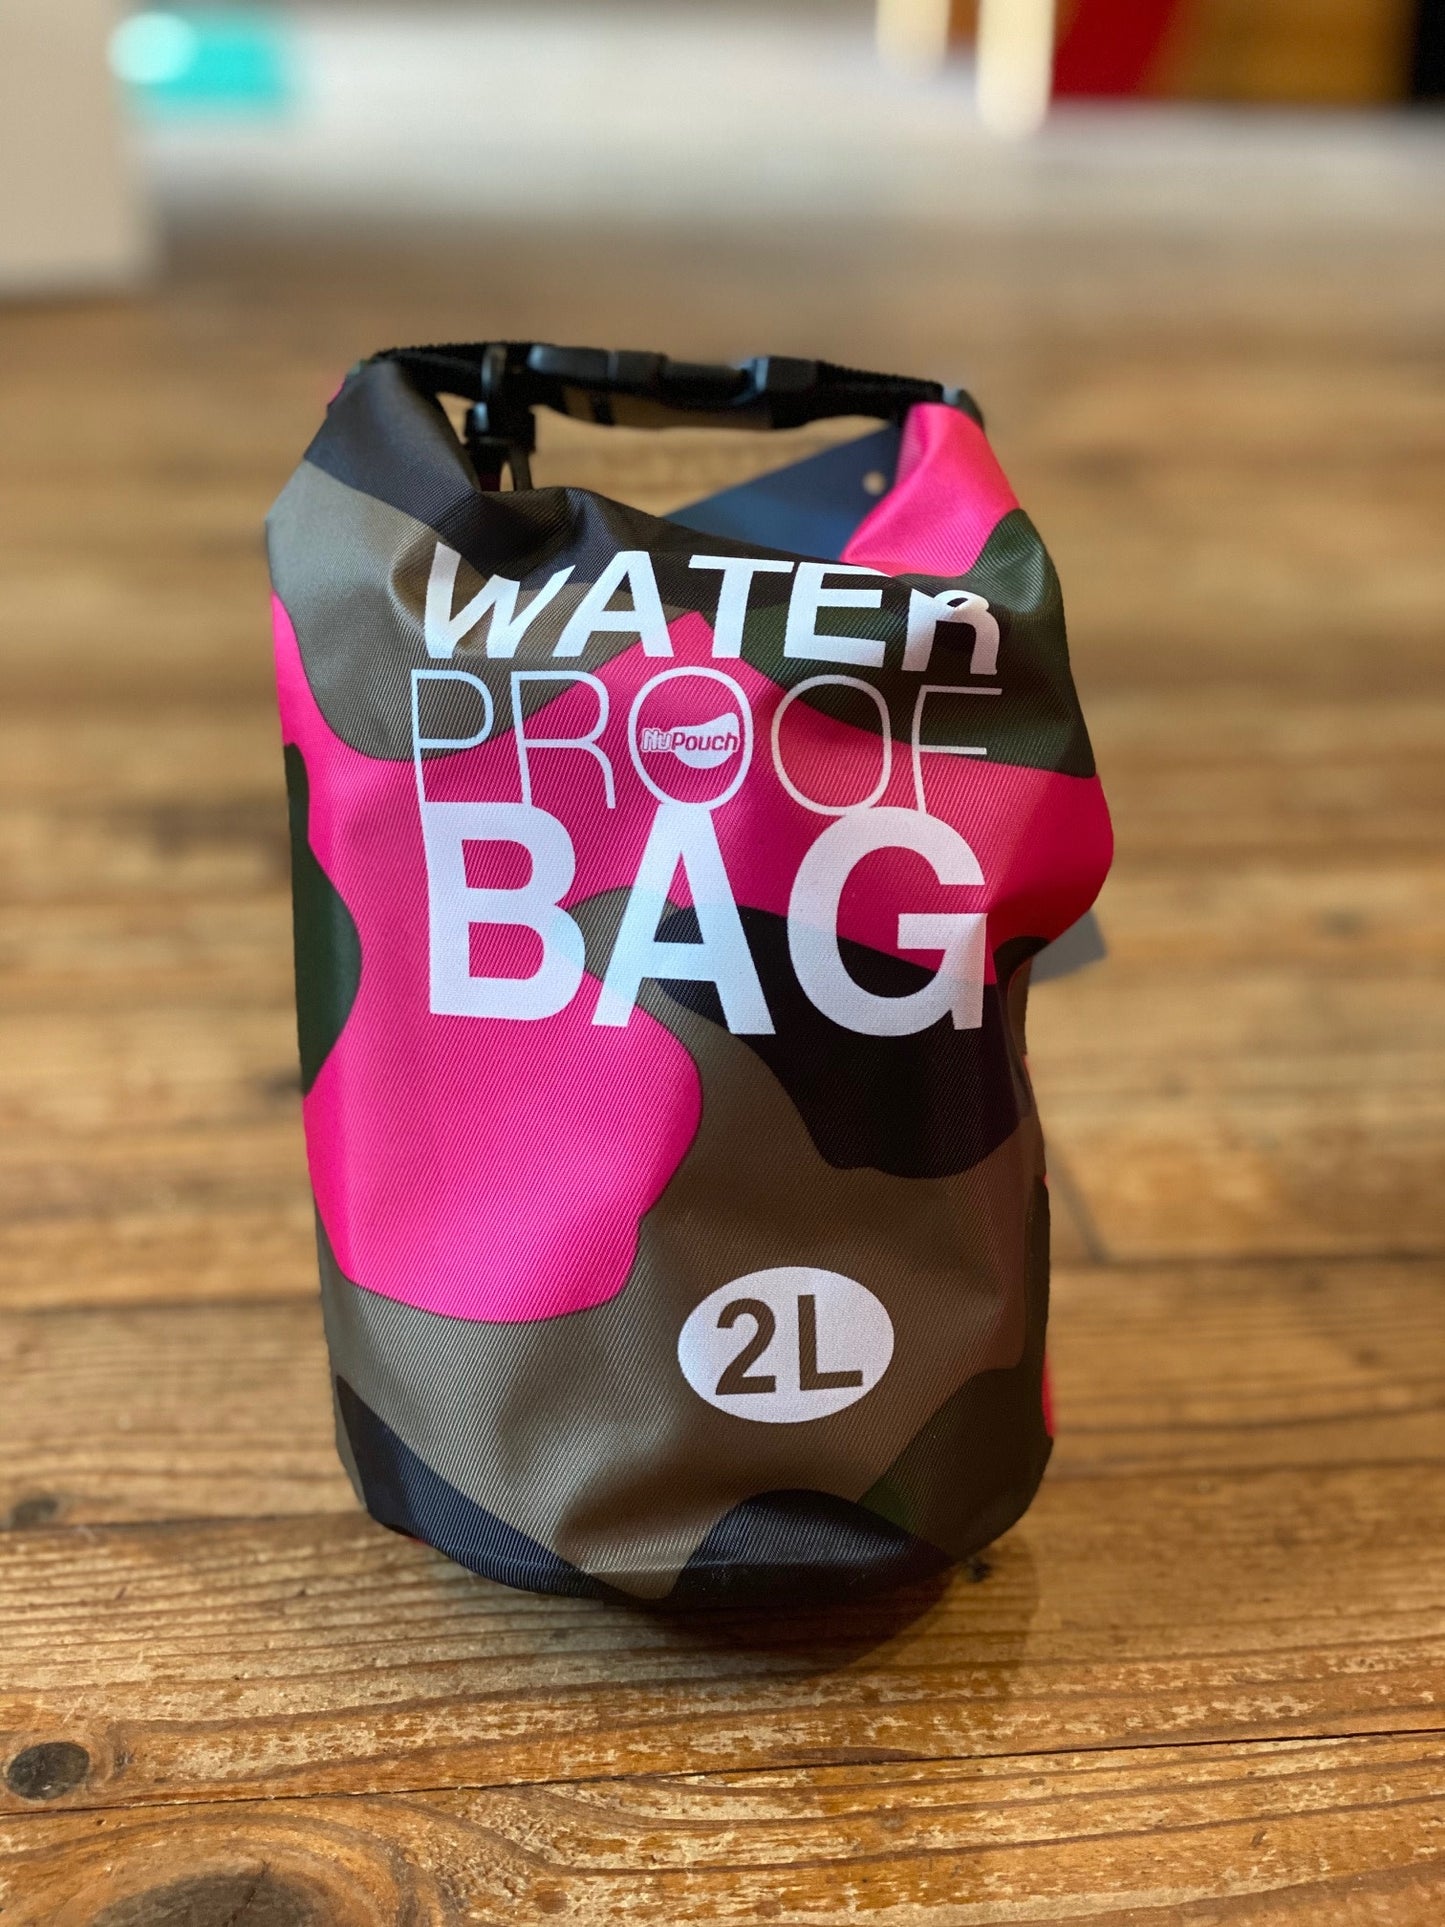 Waterproof Dry Bag 5L